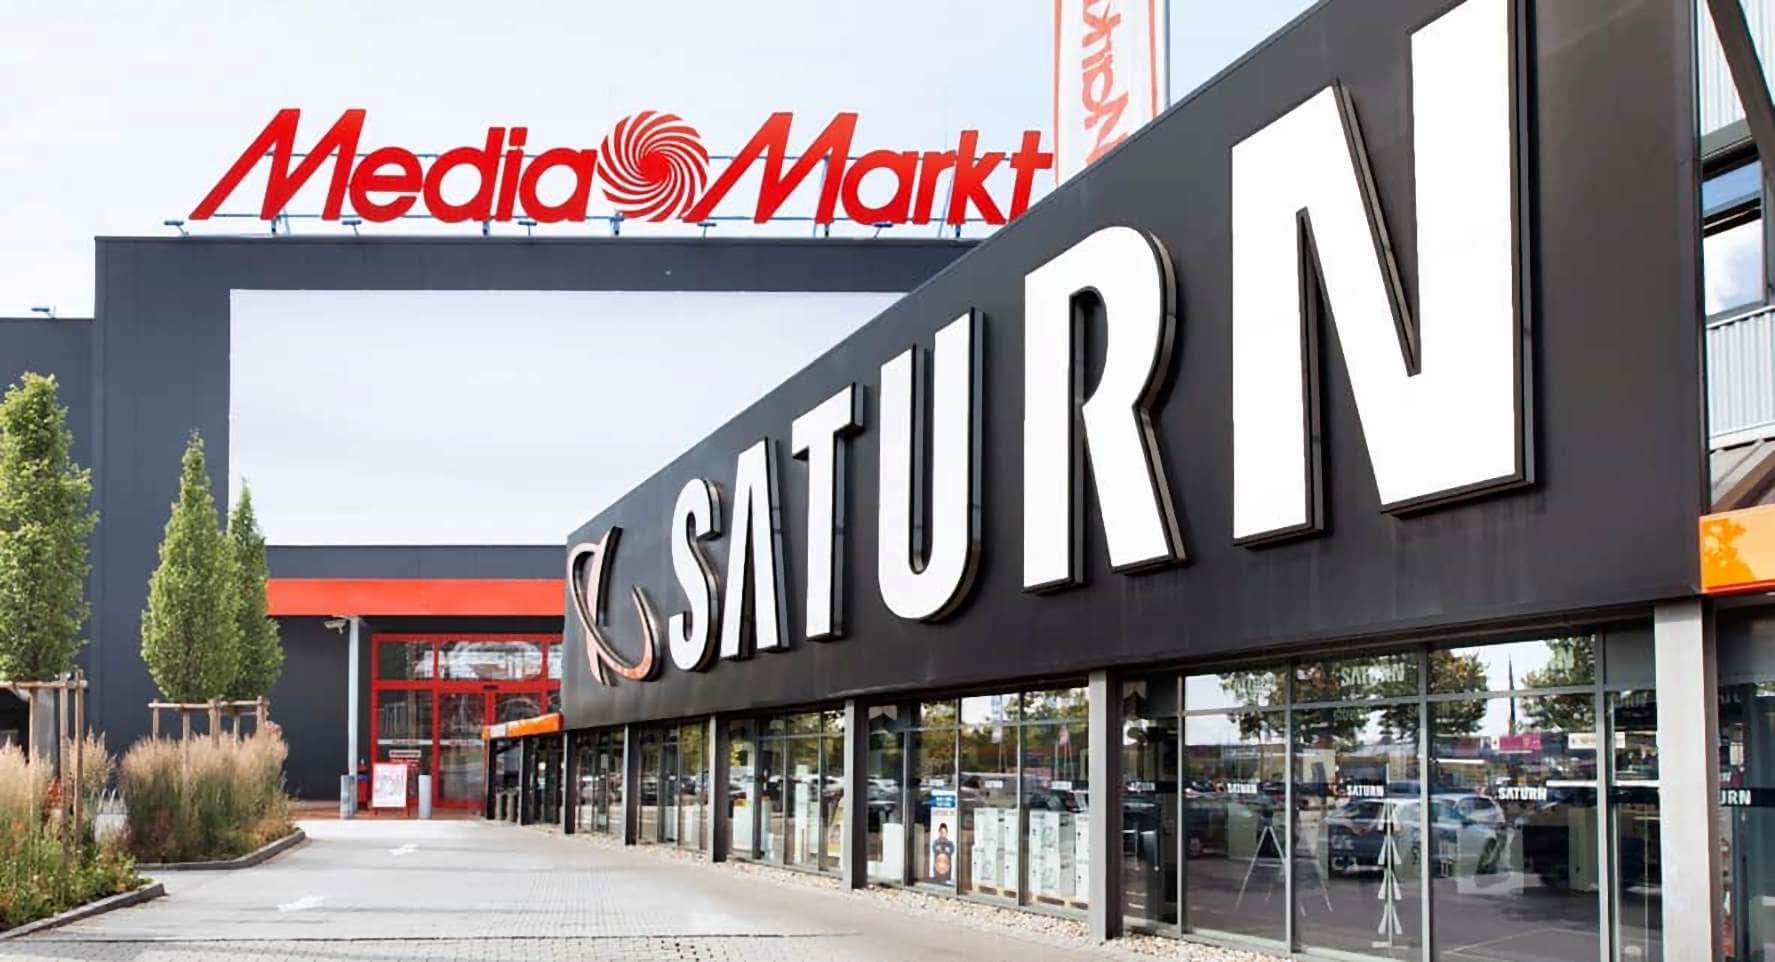 Viele Chancen für MediaMarkt und Saturn, wenn das Einkaufserlebnis attraktiver und kundenorientierter gestaltet wird, die Omnichannel-Erfahrung weiter gestärkt und Online und Offline stärker miteinander verzahnt werden.